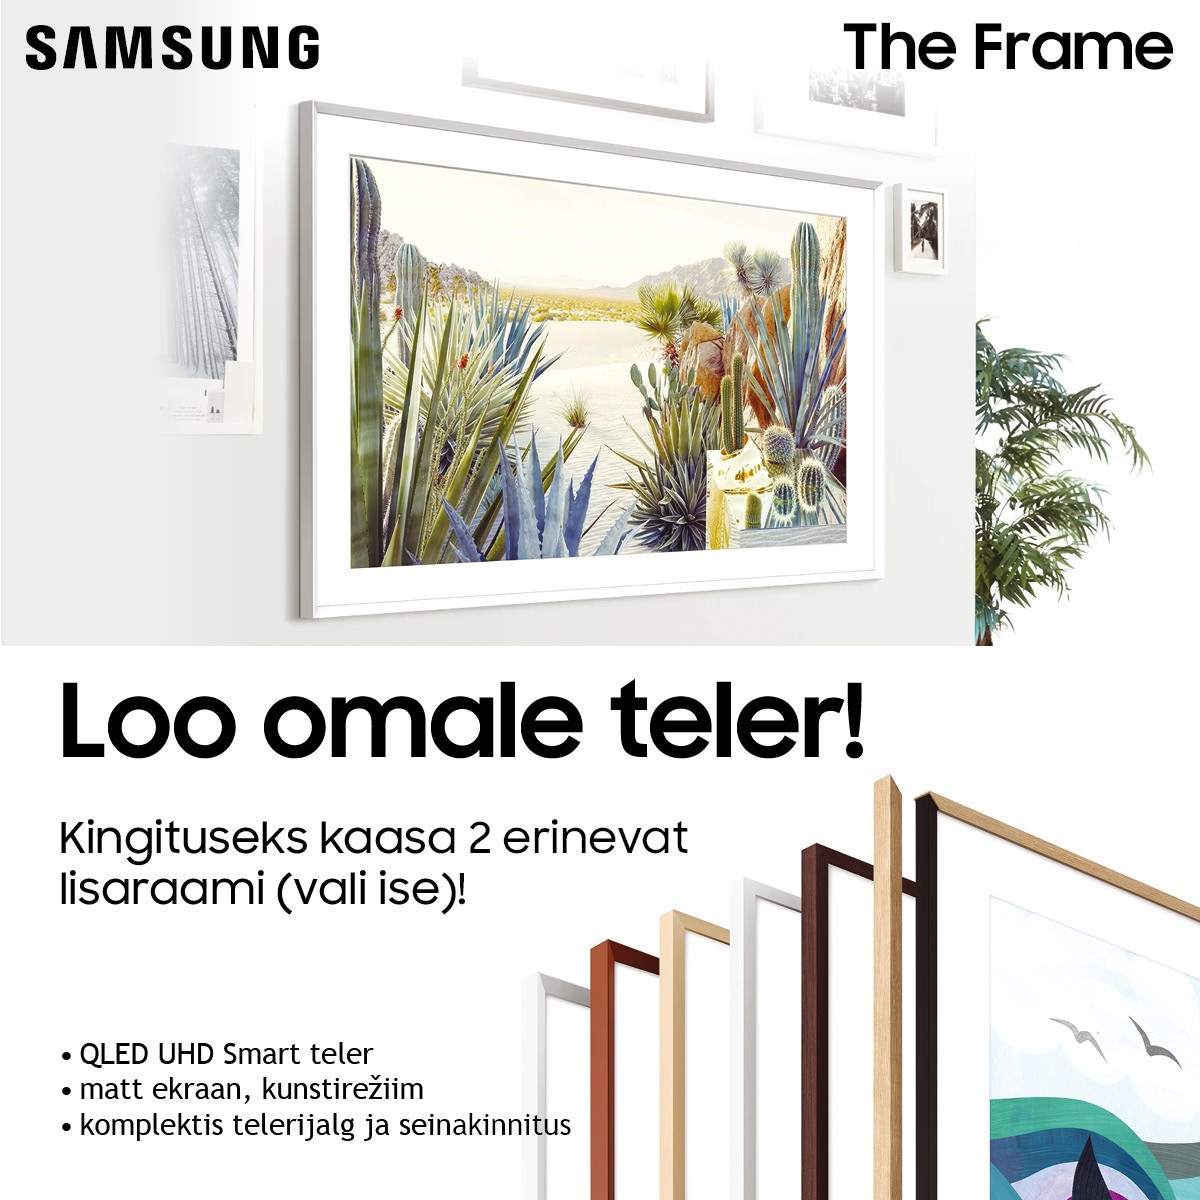 Samsung The Frame teleriga kingituseks 2 lisaraami